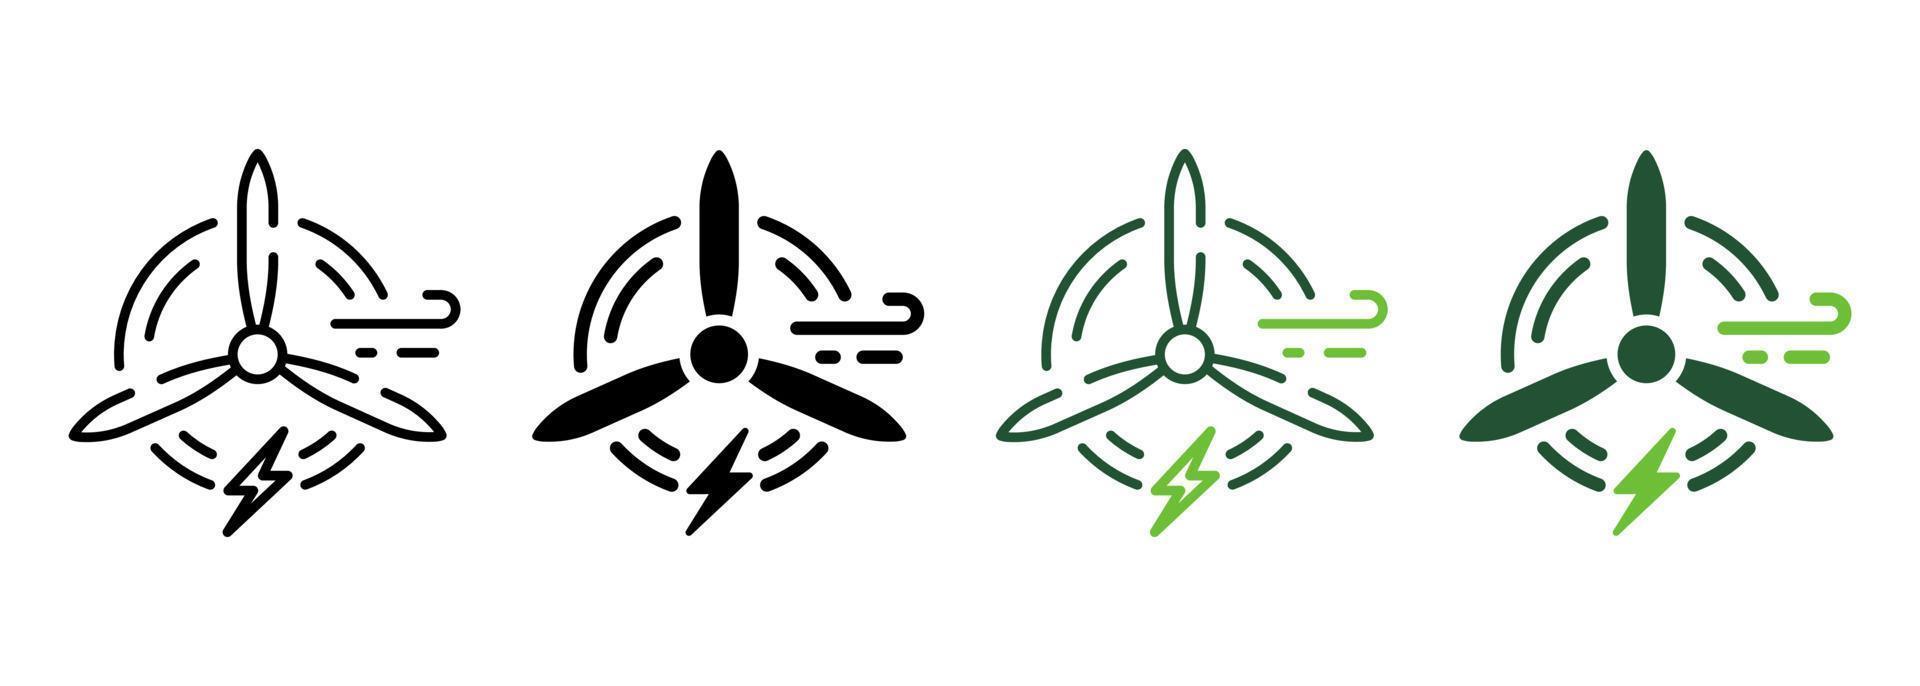 Línea de energía verde de aerogeneradores ecológicos y conjunto de colores de iconos de silueta. pictograma de energía renovable de molino de viento. colección de símbolo de molino de viento ecológico sobre fondo blanco. ilustración vectorial aislada. vector